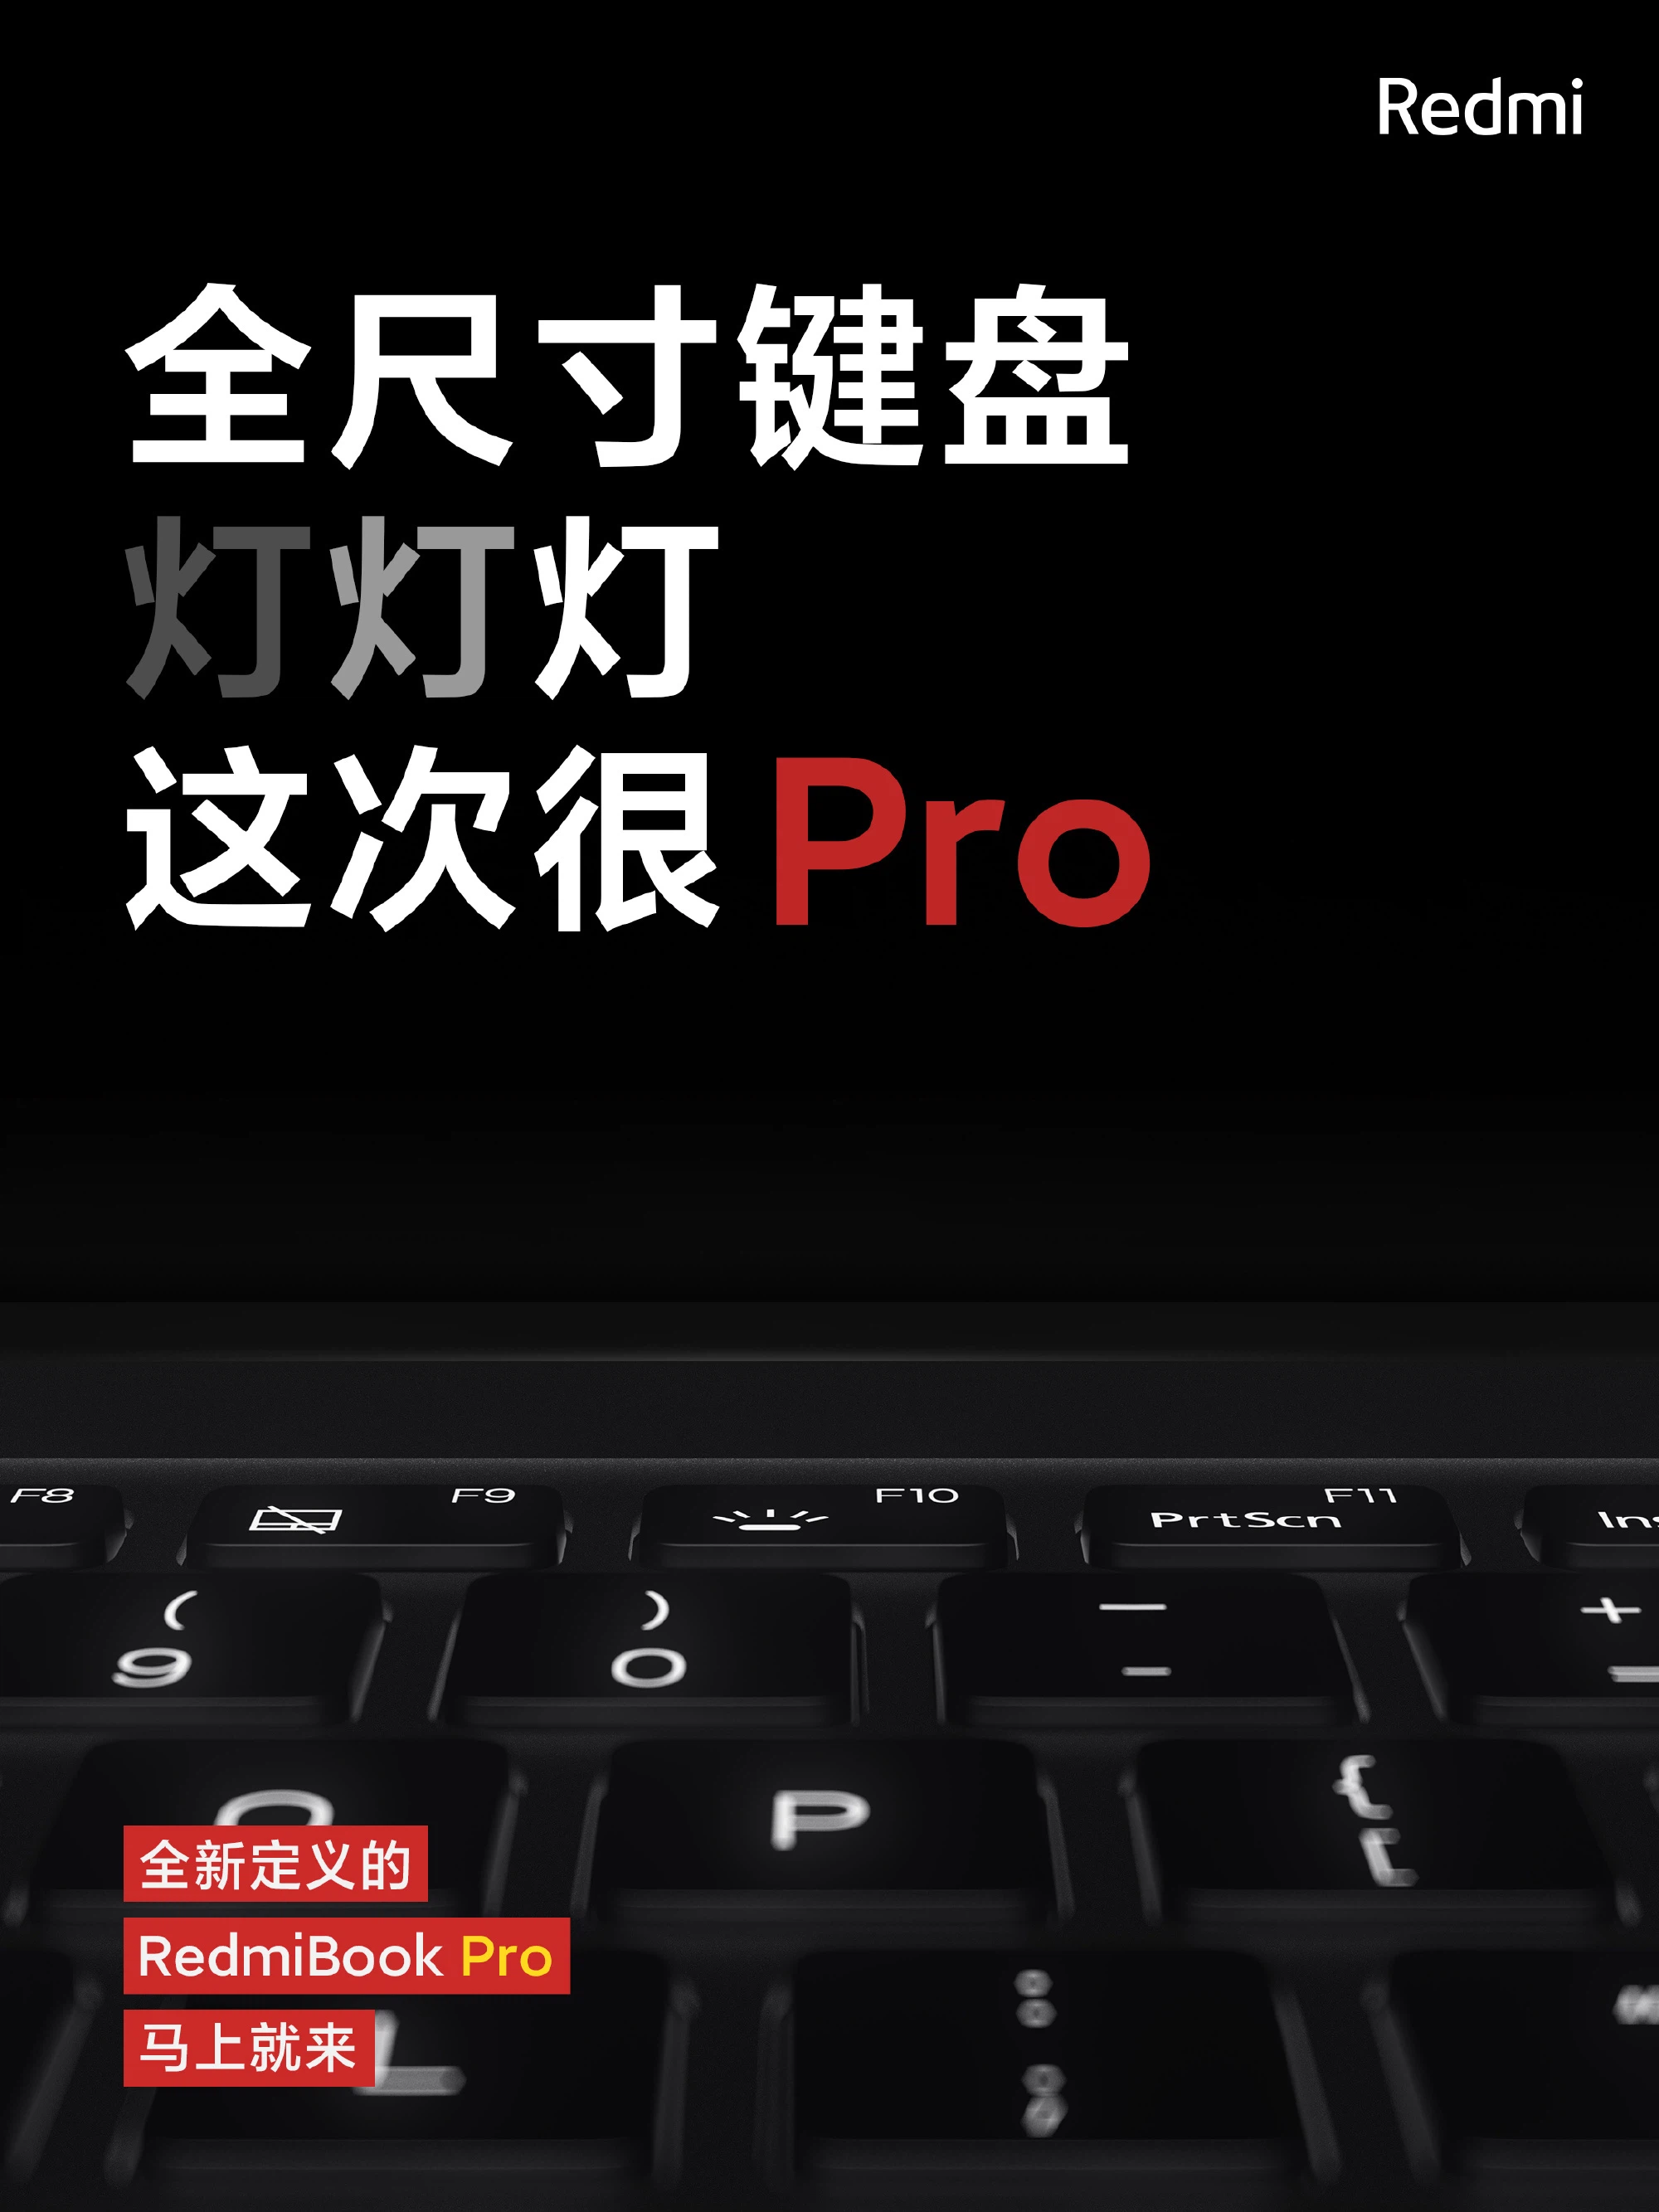 RedmiBook Pro: Thiết kế cao cấp, Intel thế hệ
11, Nvidia MX450, ra mắt ngày 25/2